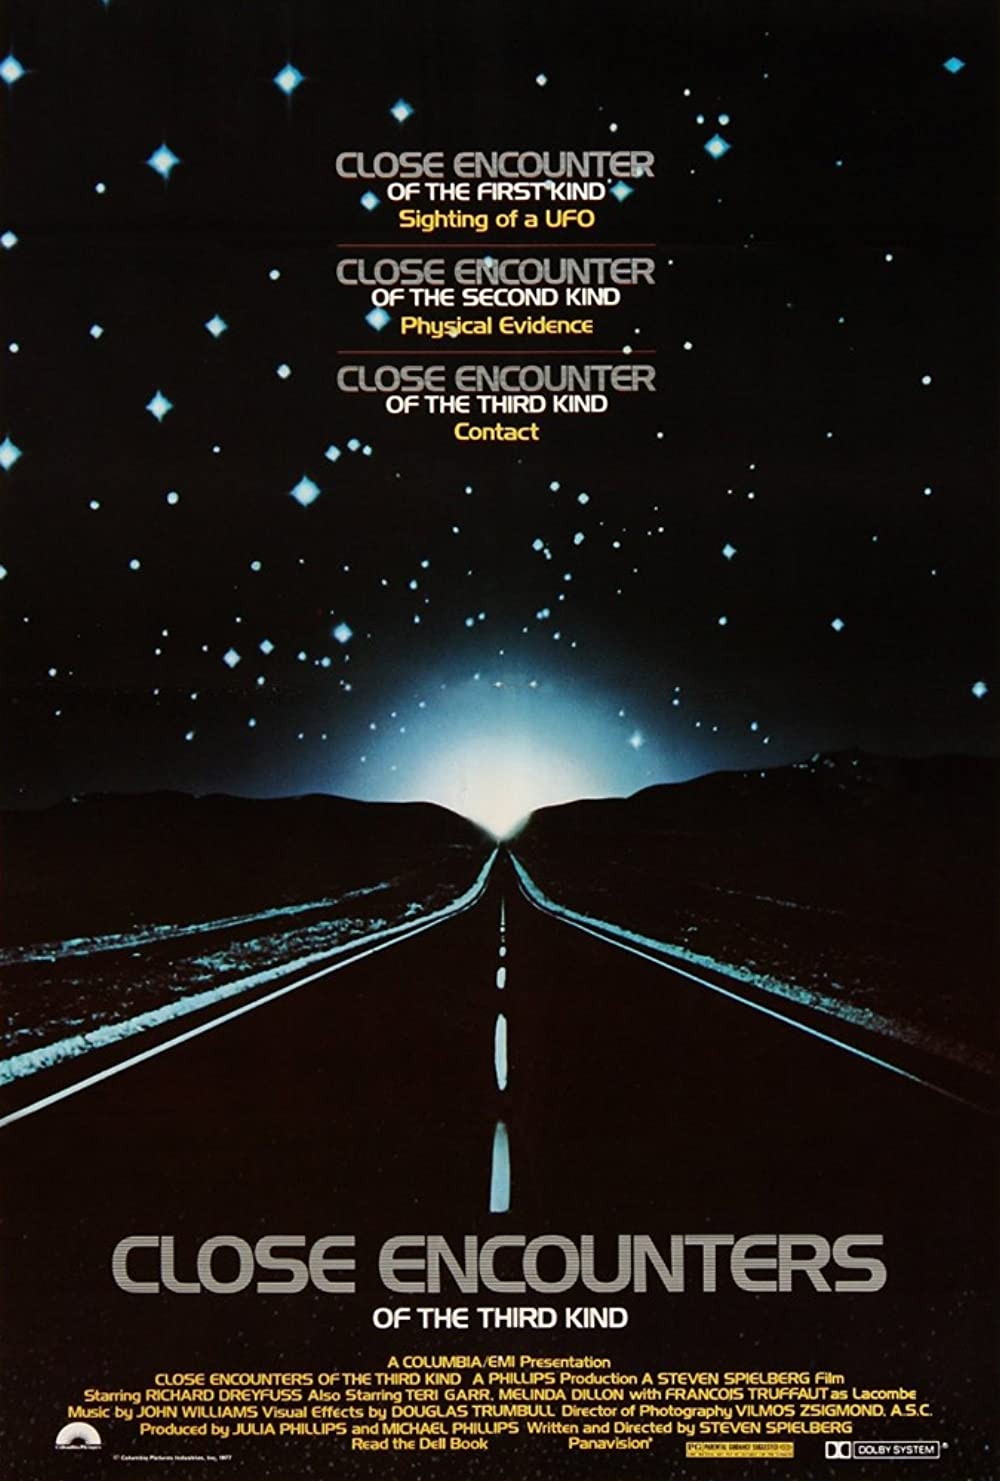 ดูหนังออนไลน์ฟรี Close Encounters of the Third Kind 1977 มนุษย์ต่างโลก . movie678